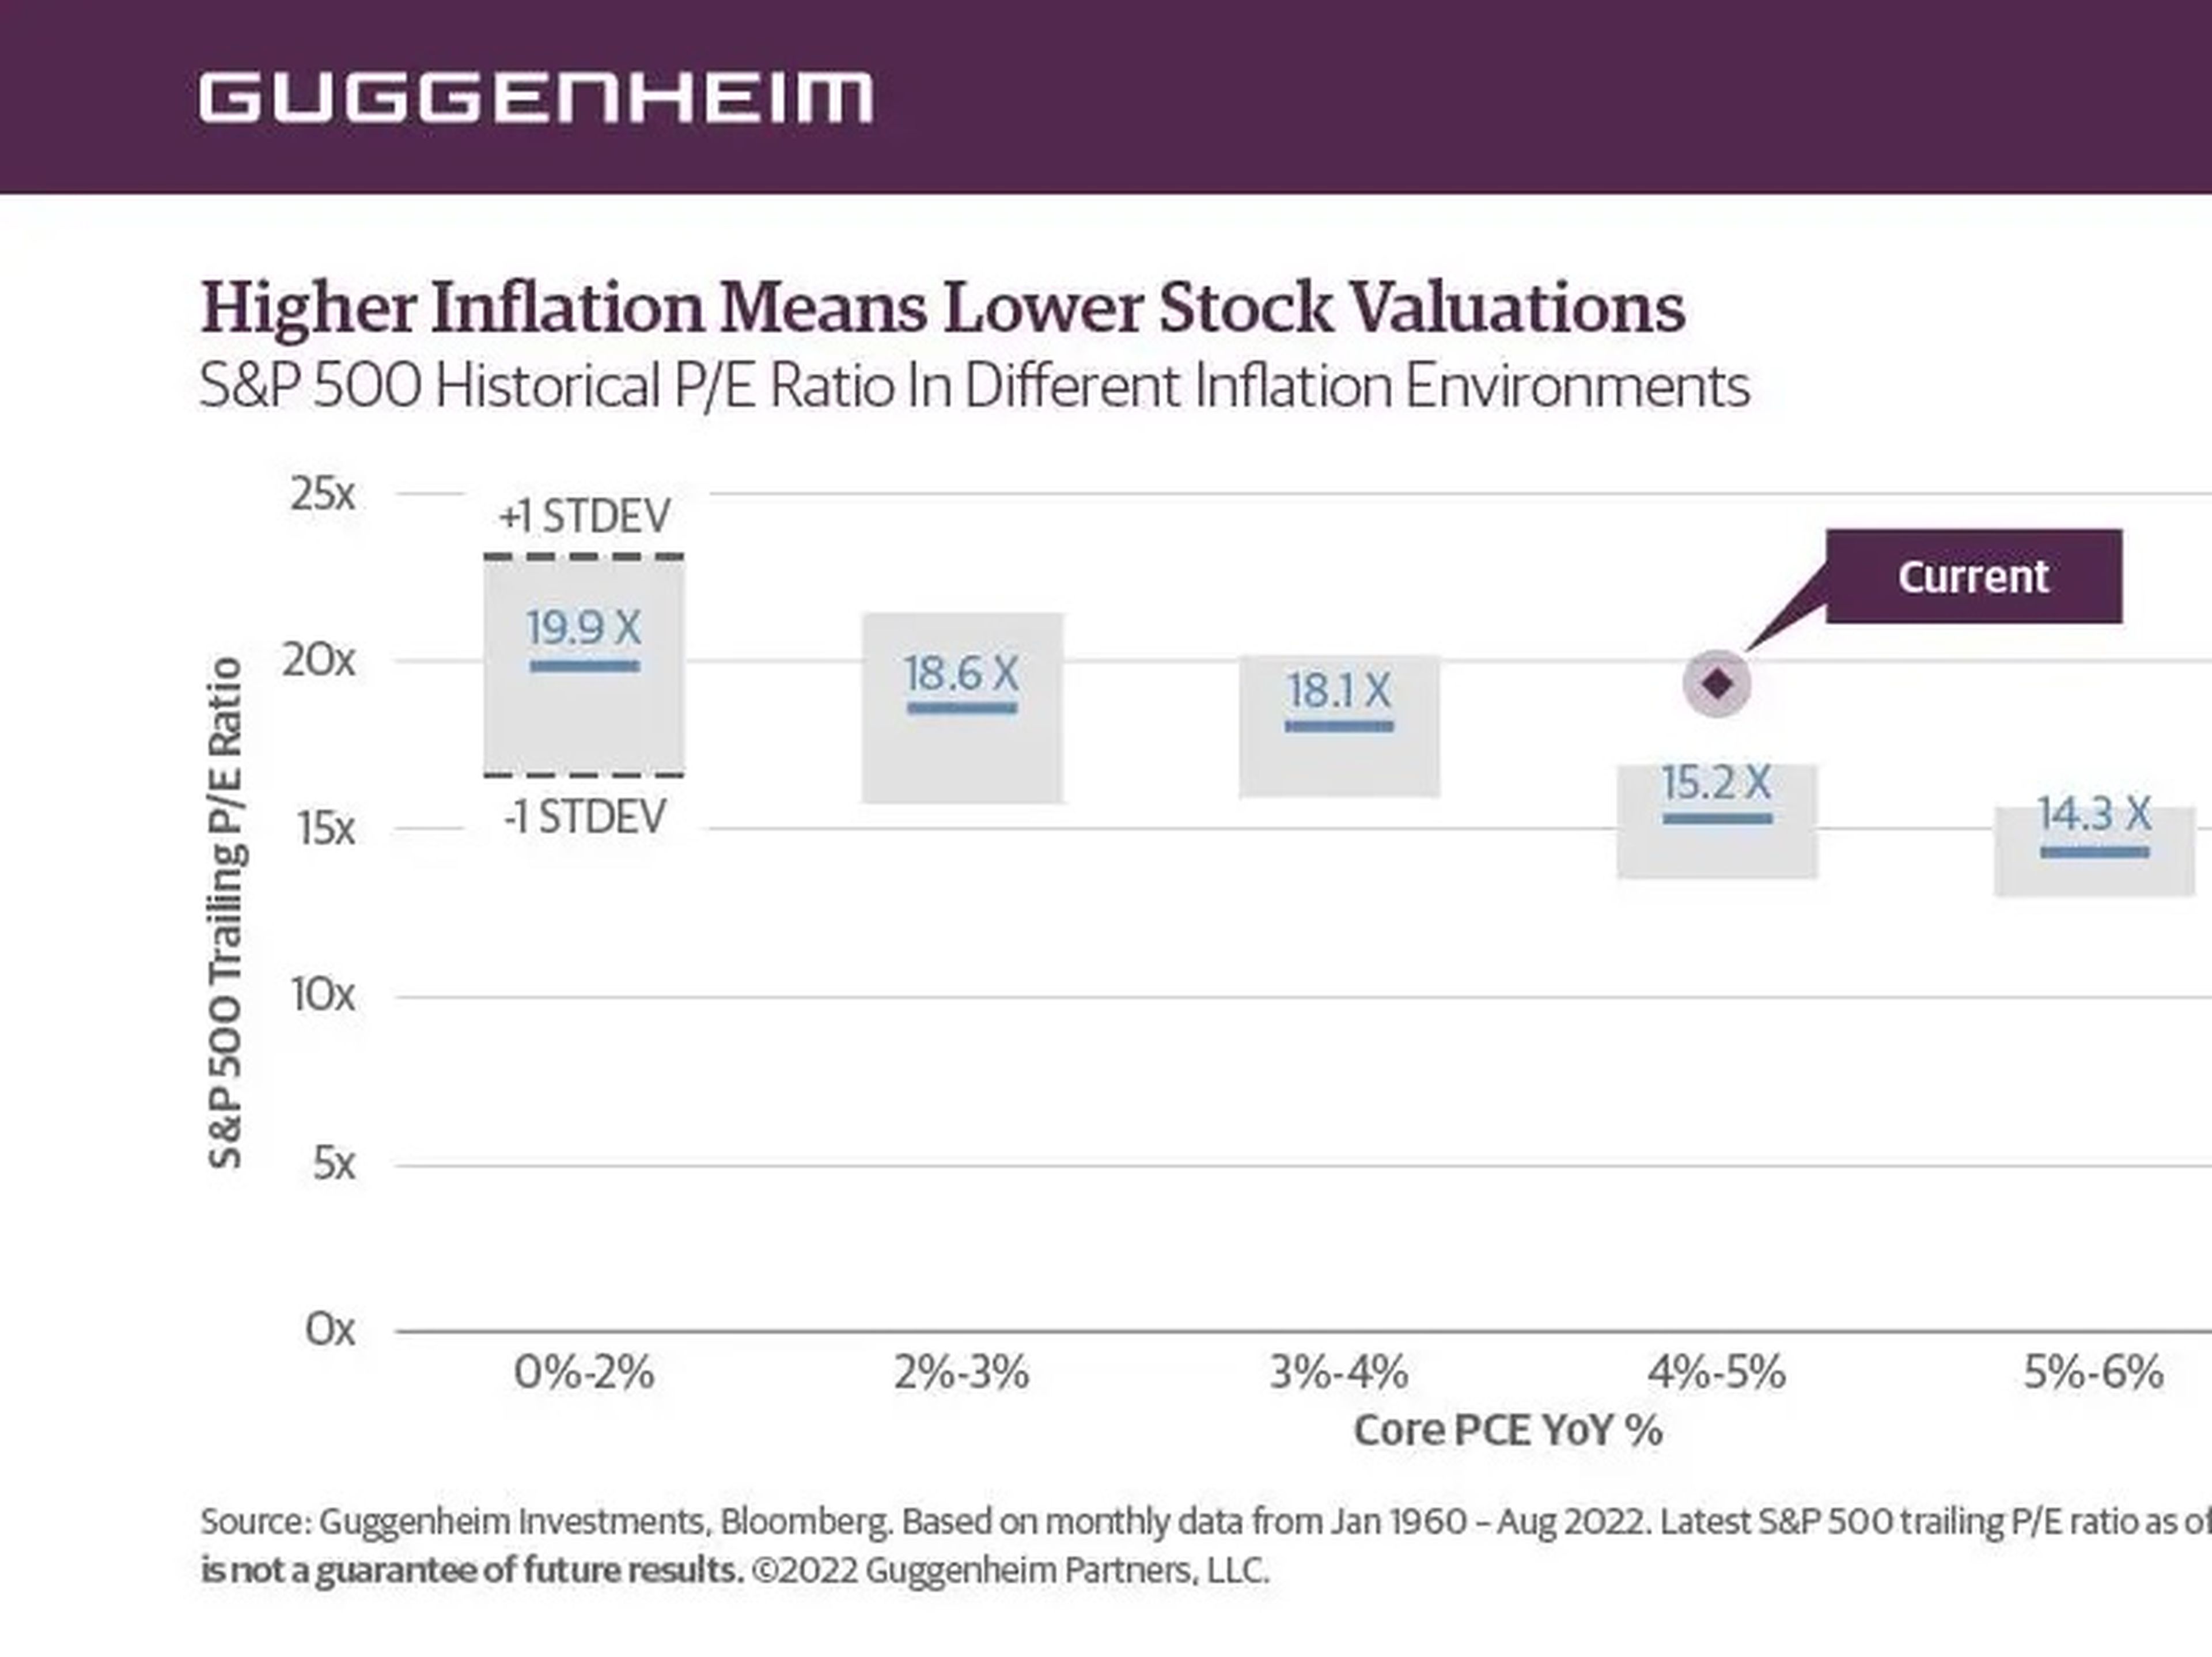 Relación P/E histórica del S&P 500 en diferentes entornos de inflación. "Una mayor inflación implica una menor valoración de las acciones".